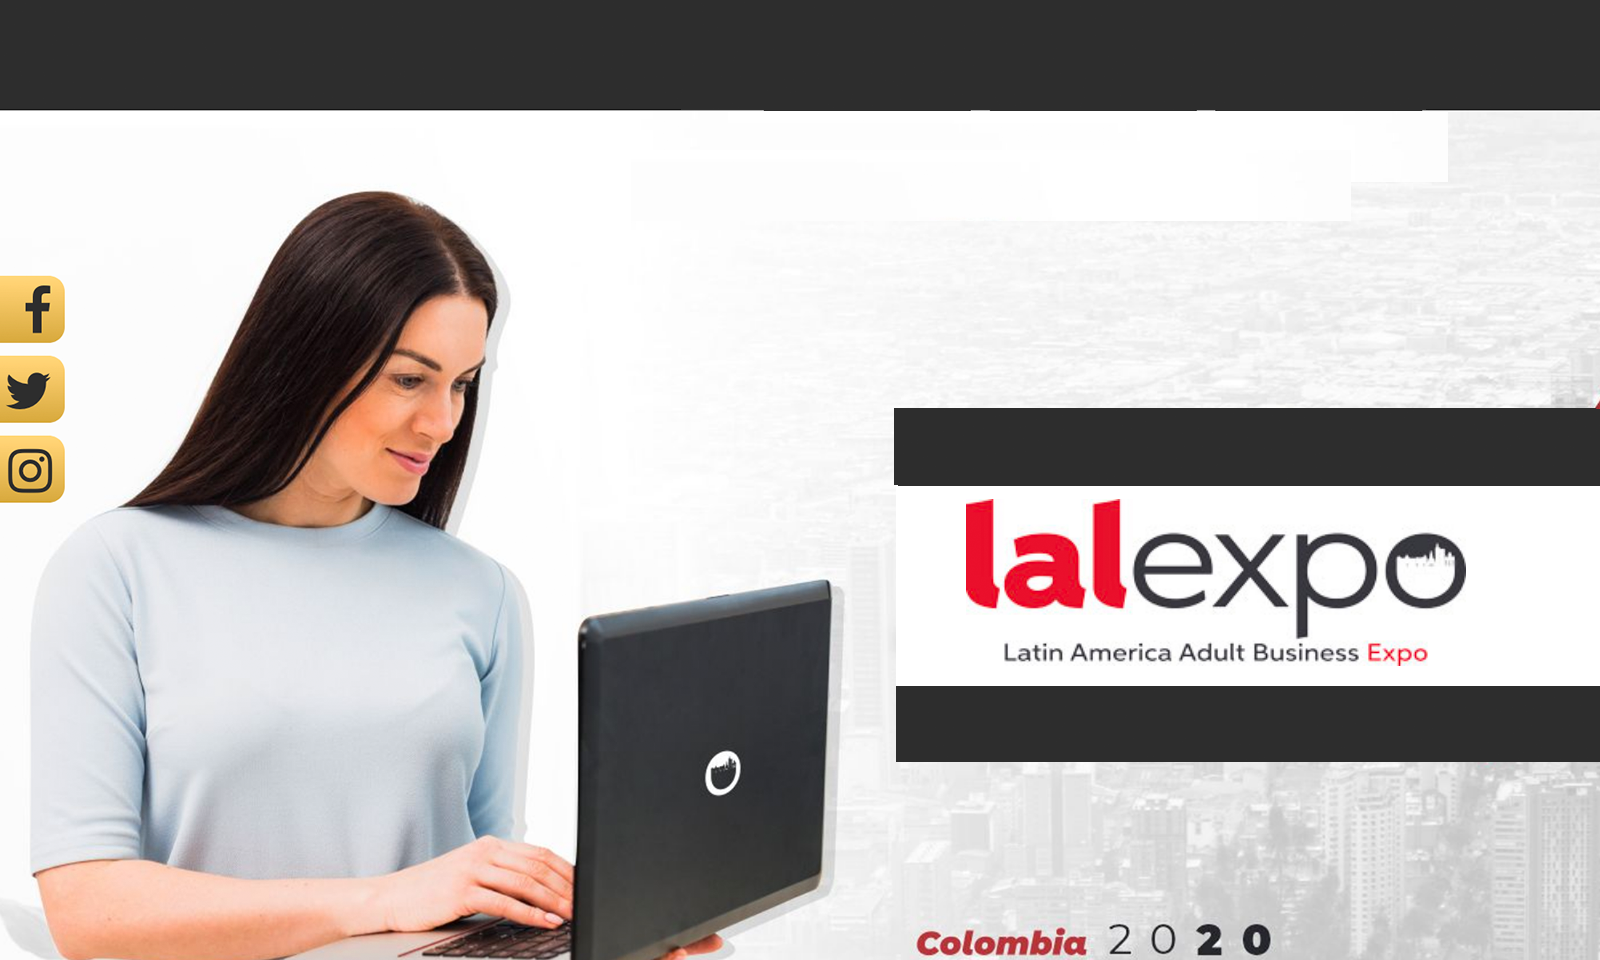 Lalexpo 2020 Surprises With New Colombian Venue, Las Vegas Event